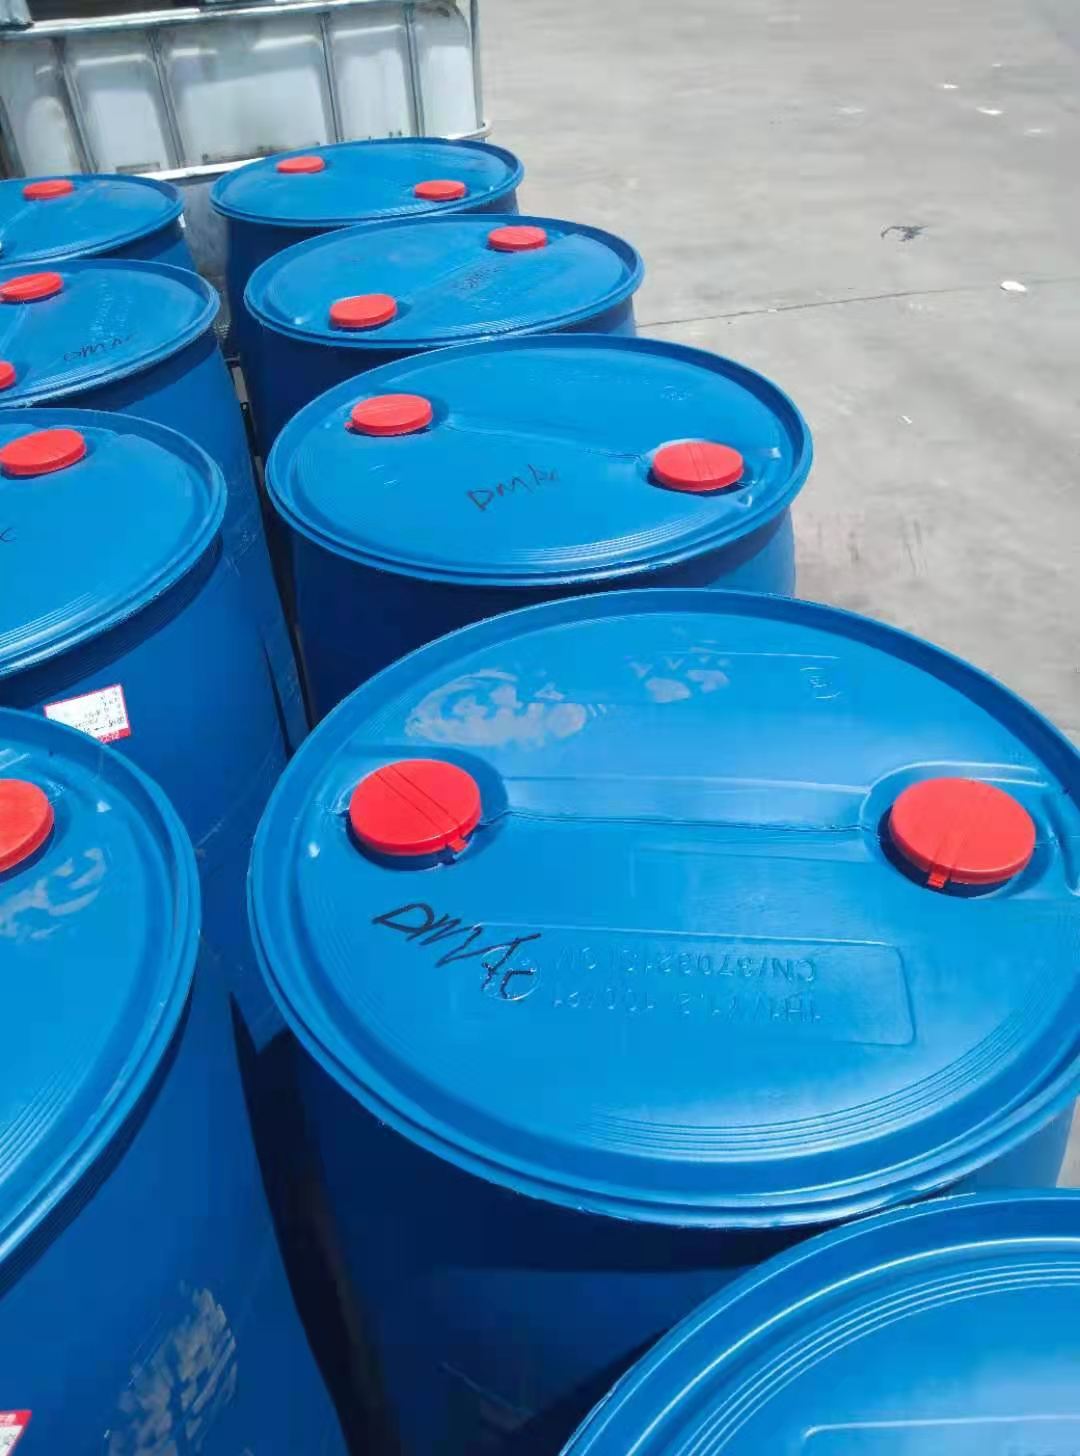 扬子巴斯夫丙烯酸生产厂家精酸高品质产品99.9%